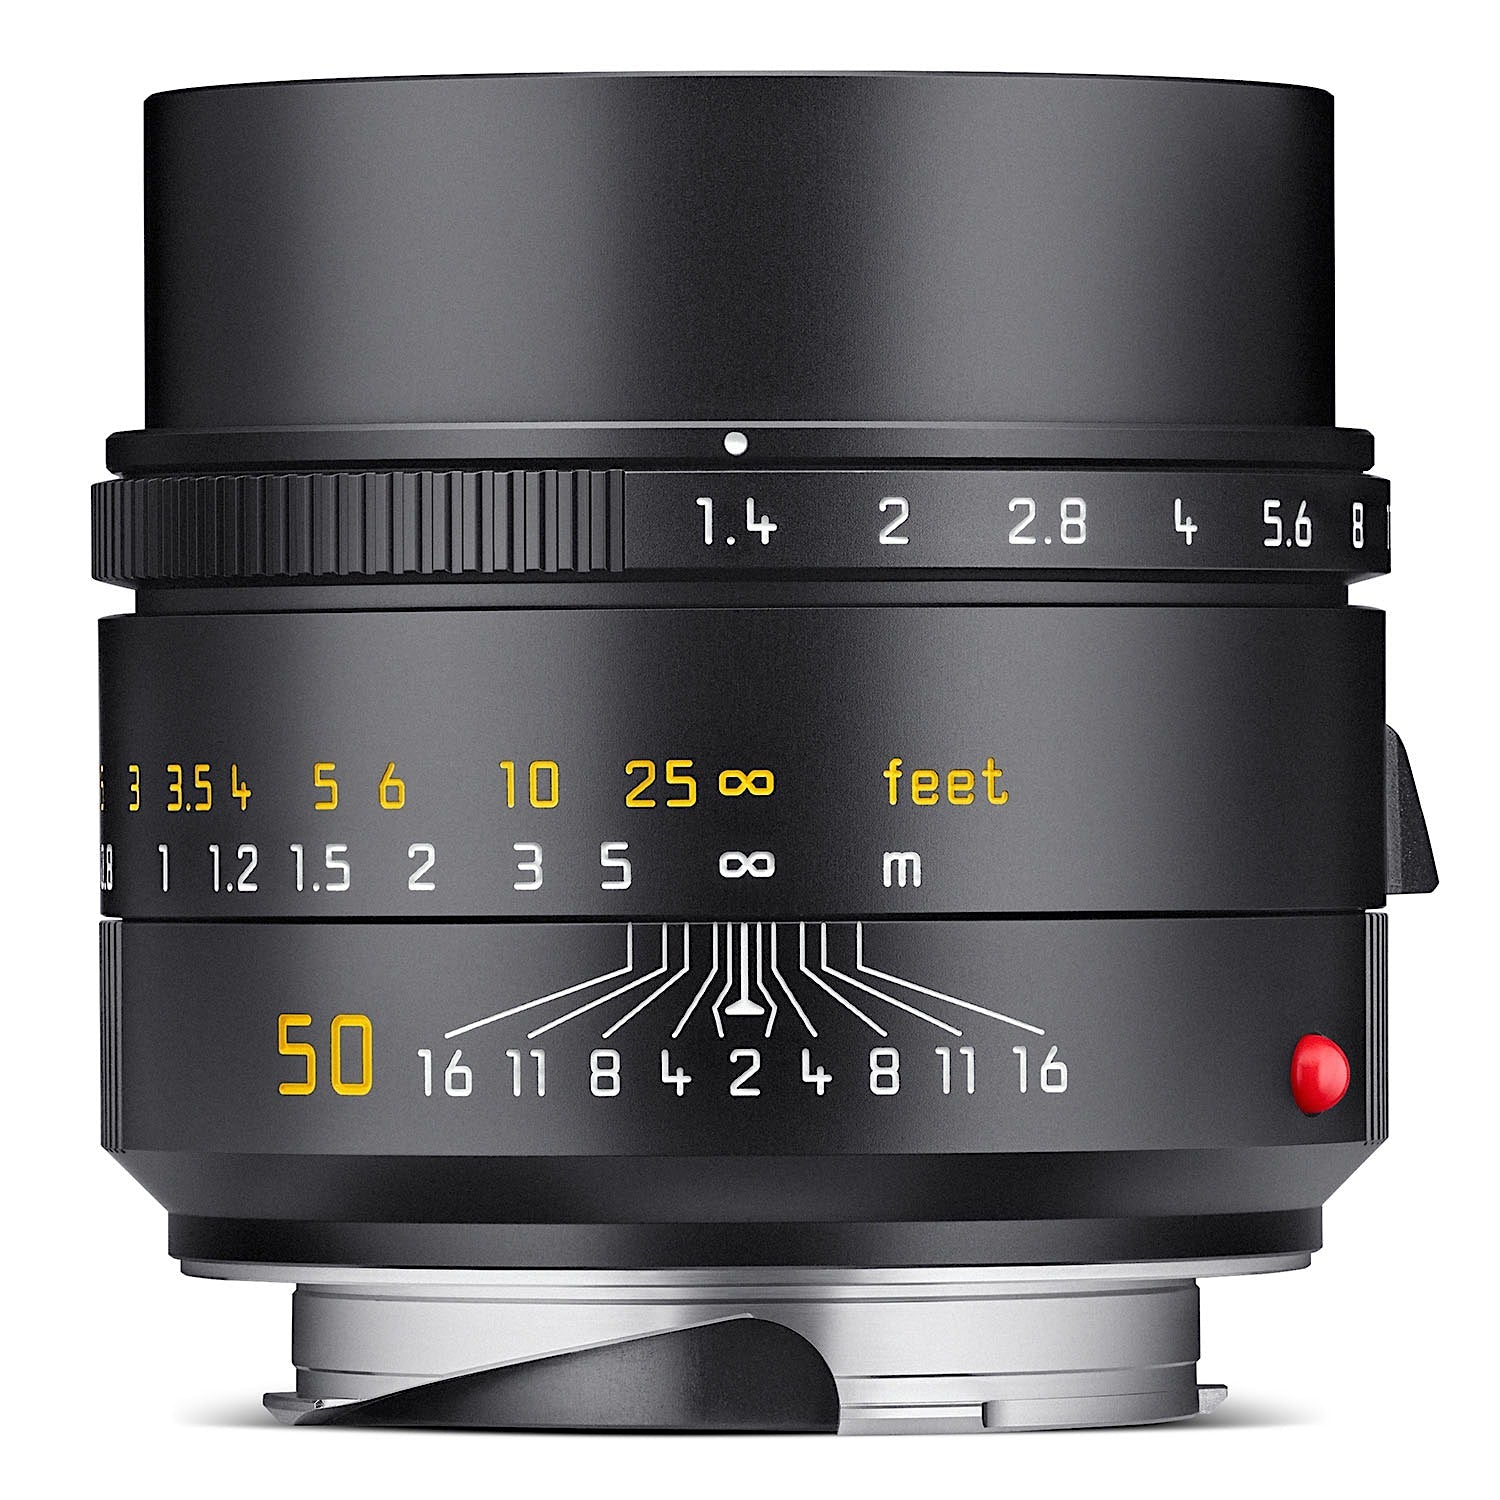 Leica M 50mm f1.4 Summilux Asph II